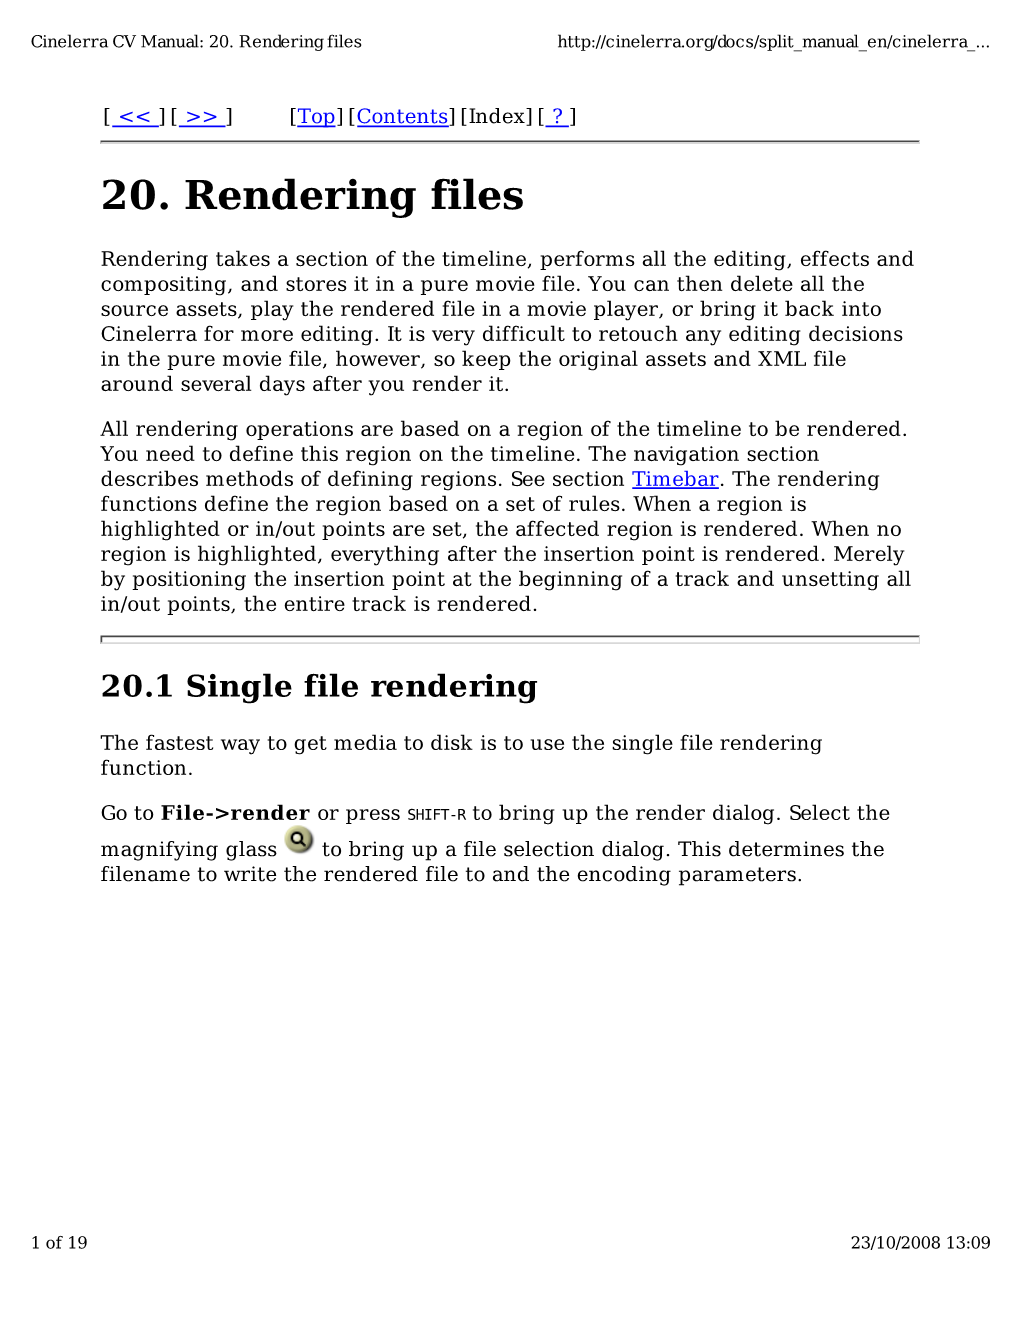 20. Rendering Files